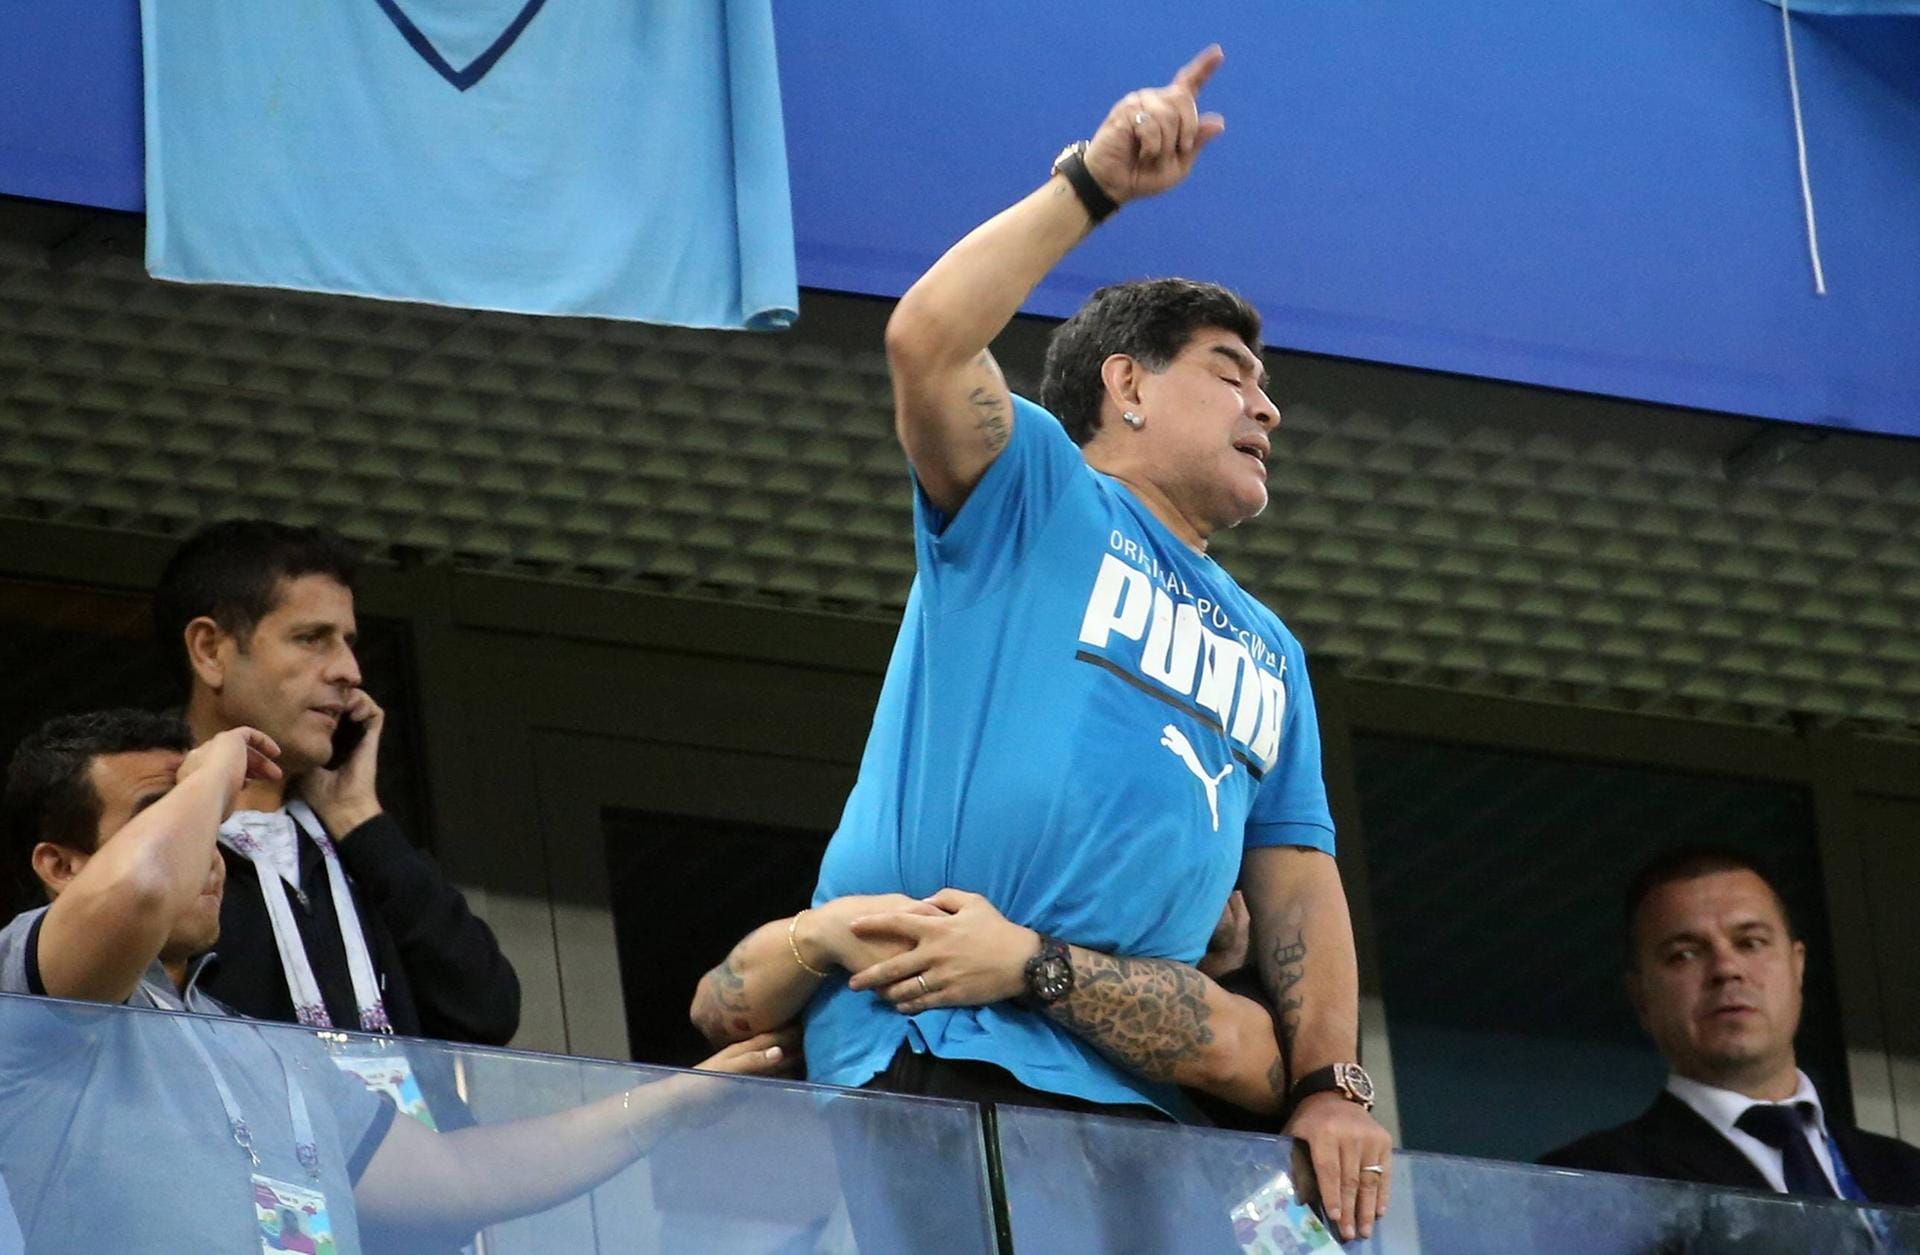 Legende Diego Maradona beim Achtelfinal-Einzug: Auf der Tribüne in St. Petersburg sieht es so aus, als würde "Die Hand Gottes" neben sich stehen. Danach wurde der Star ärztlich versorgt.